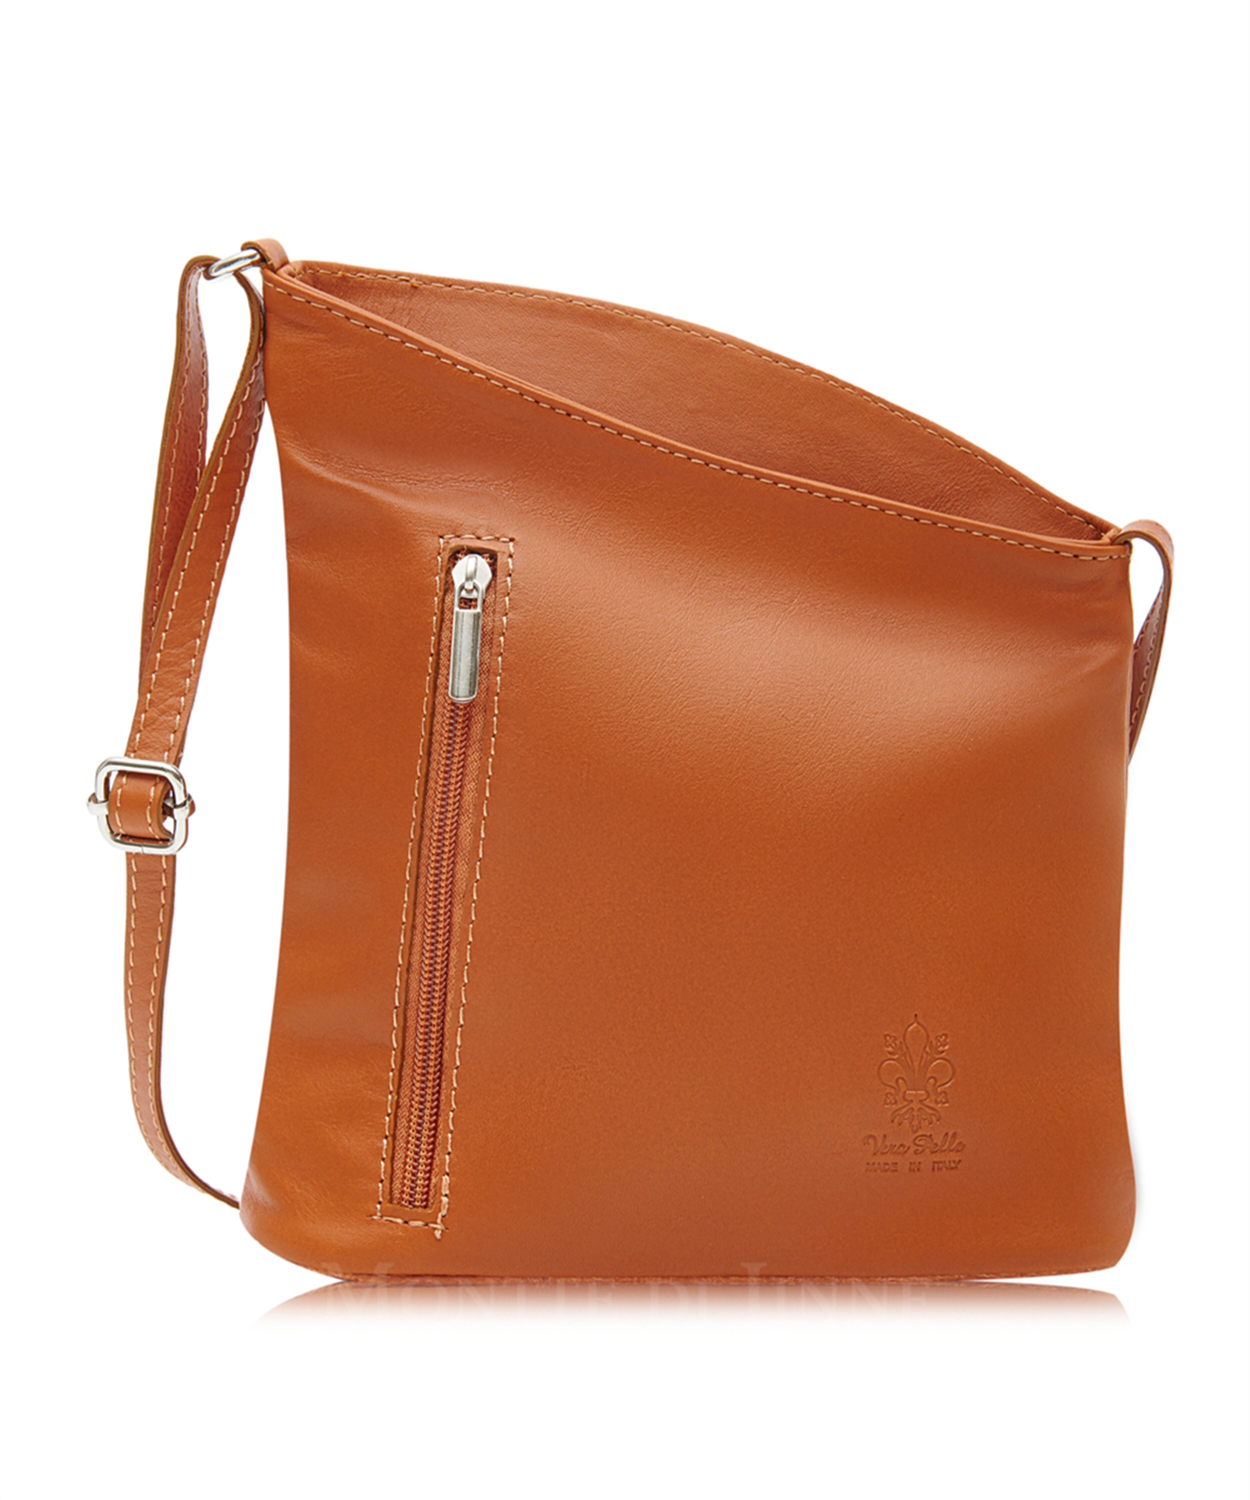 Tan Soft Leather Angled Shoulder Bag 